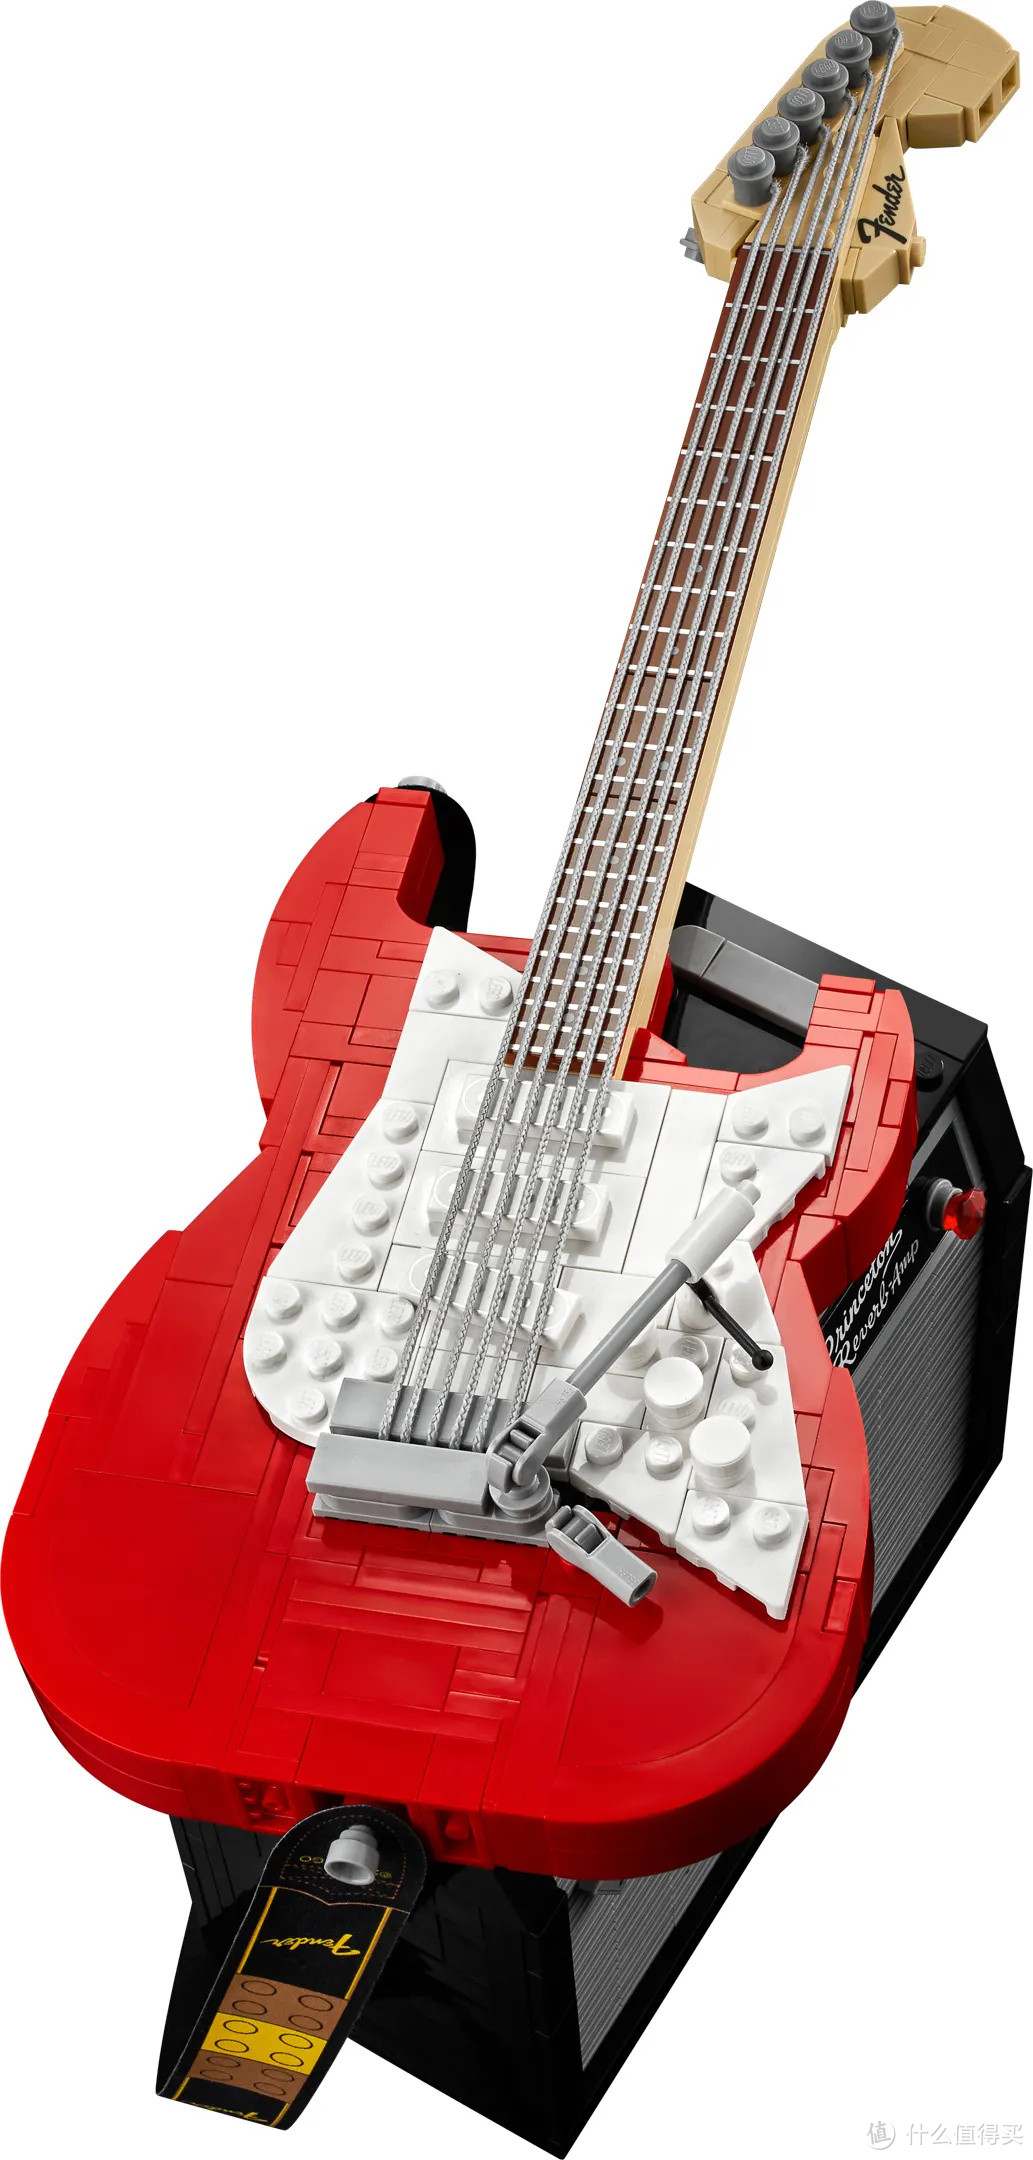 乐高正式发布21329 fender stratocaster吉他!有两种颜色!